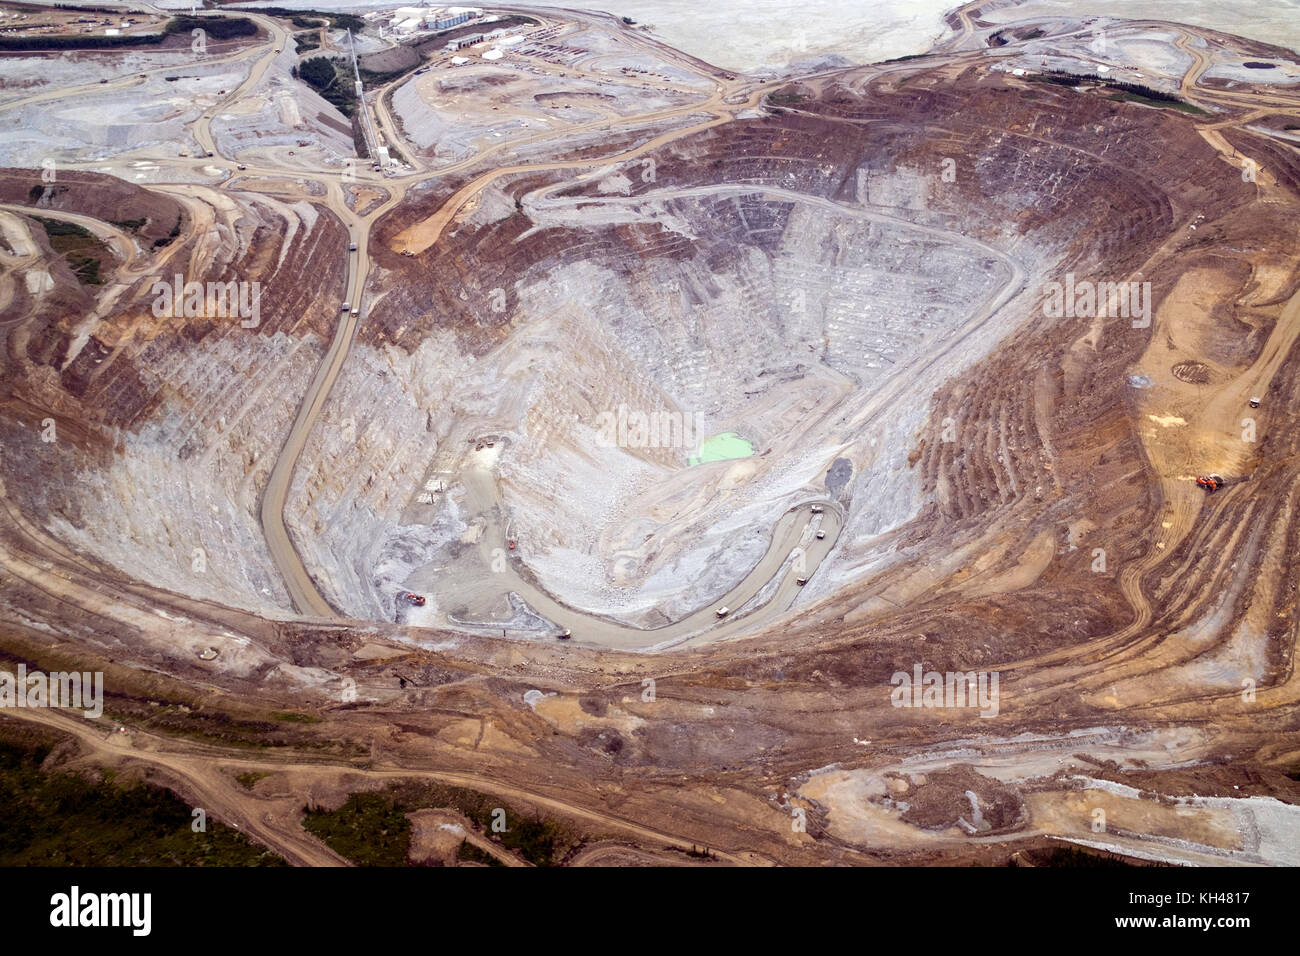 Una vista aérea de la gran mina de oro de Fort Knox, justo al norte de Fairbanks, Alaska. esta extracción de oro a cielo abierto es la operación más grande de su tipo en al. Foto de stock